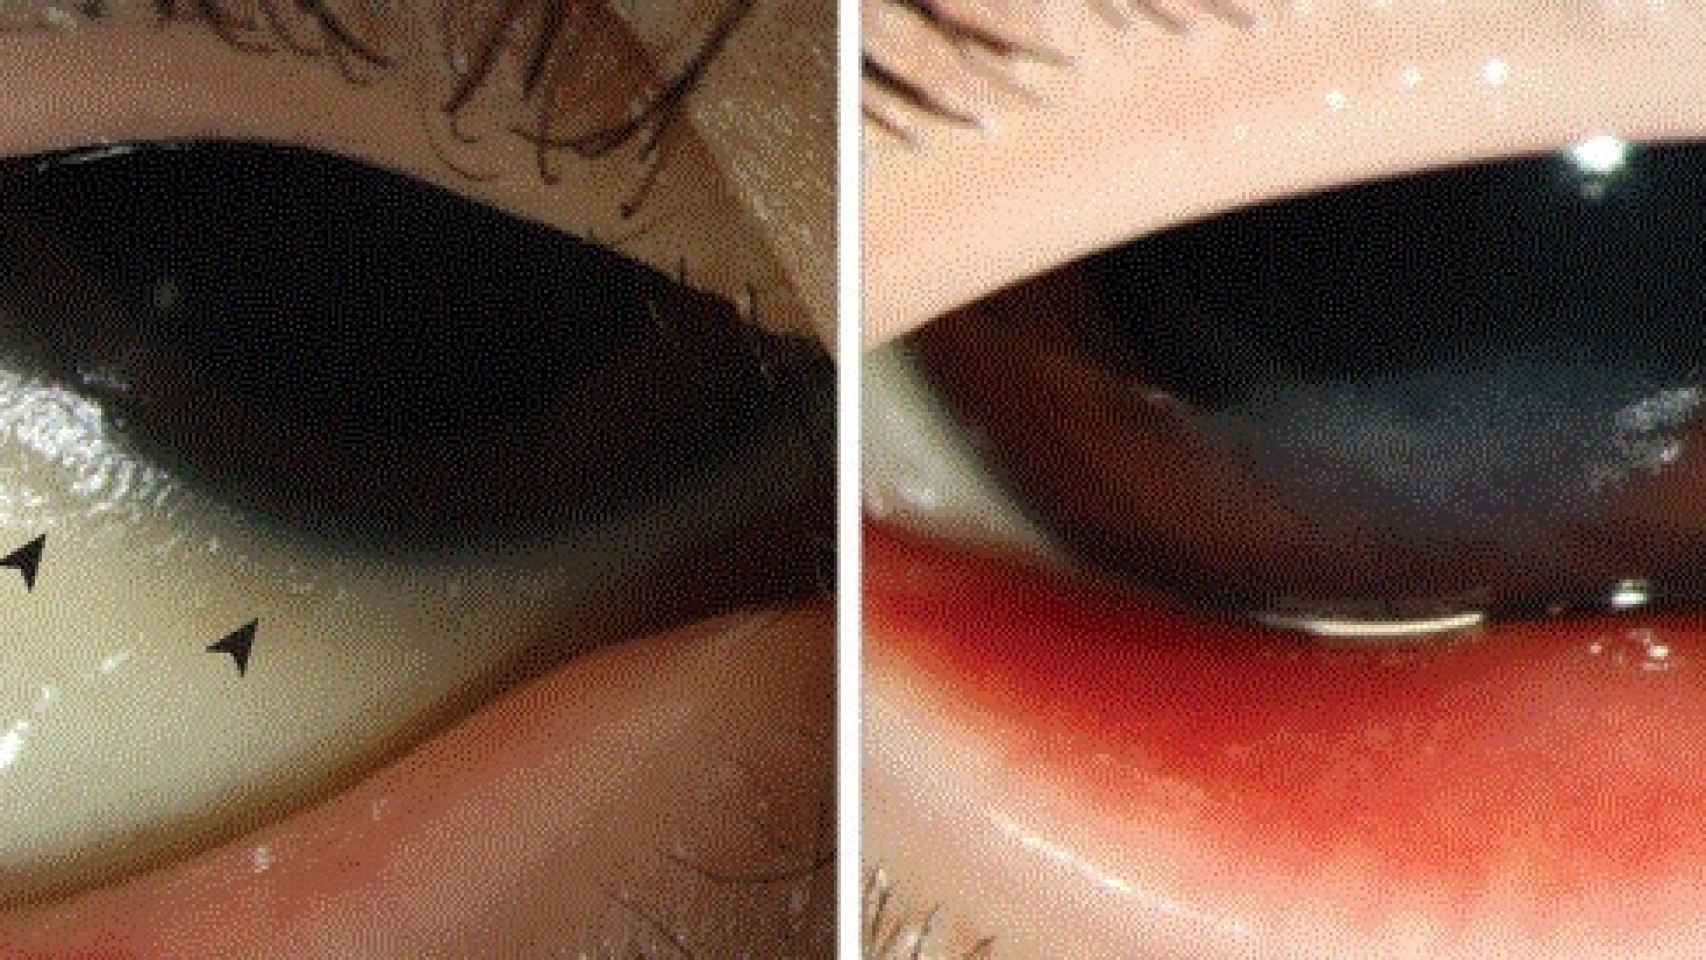 Los ojos del niño, antes y después del tratamiento.